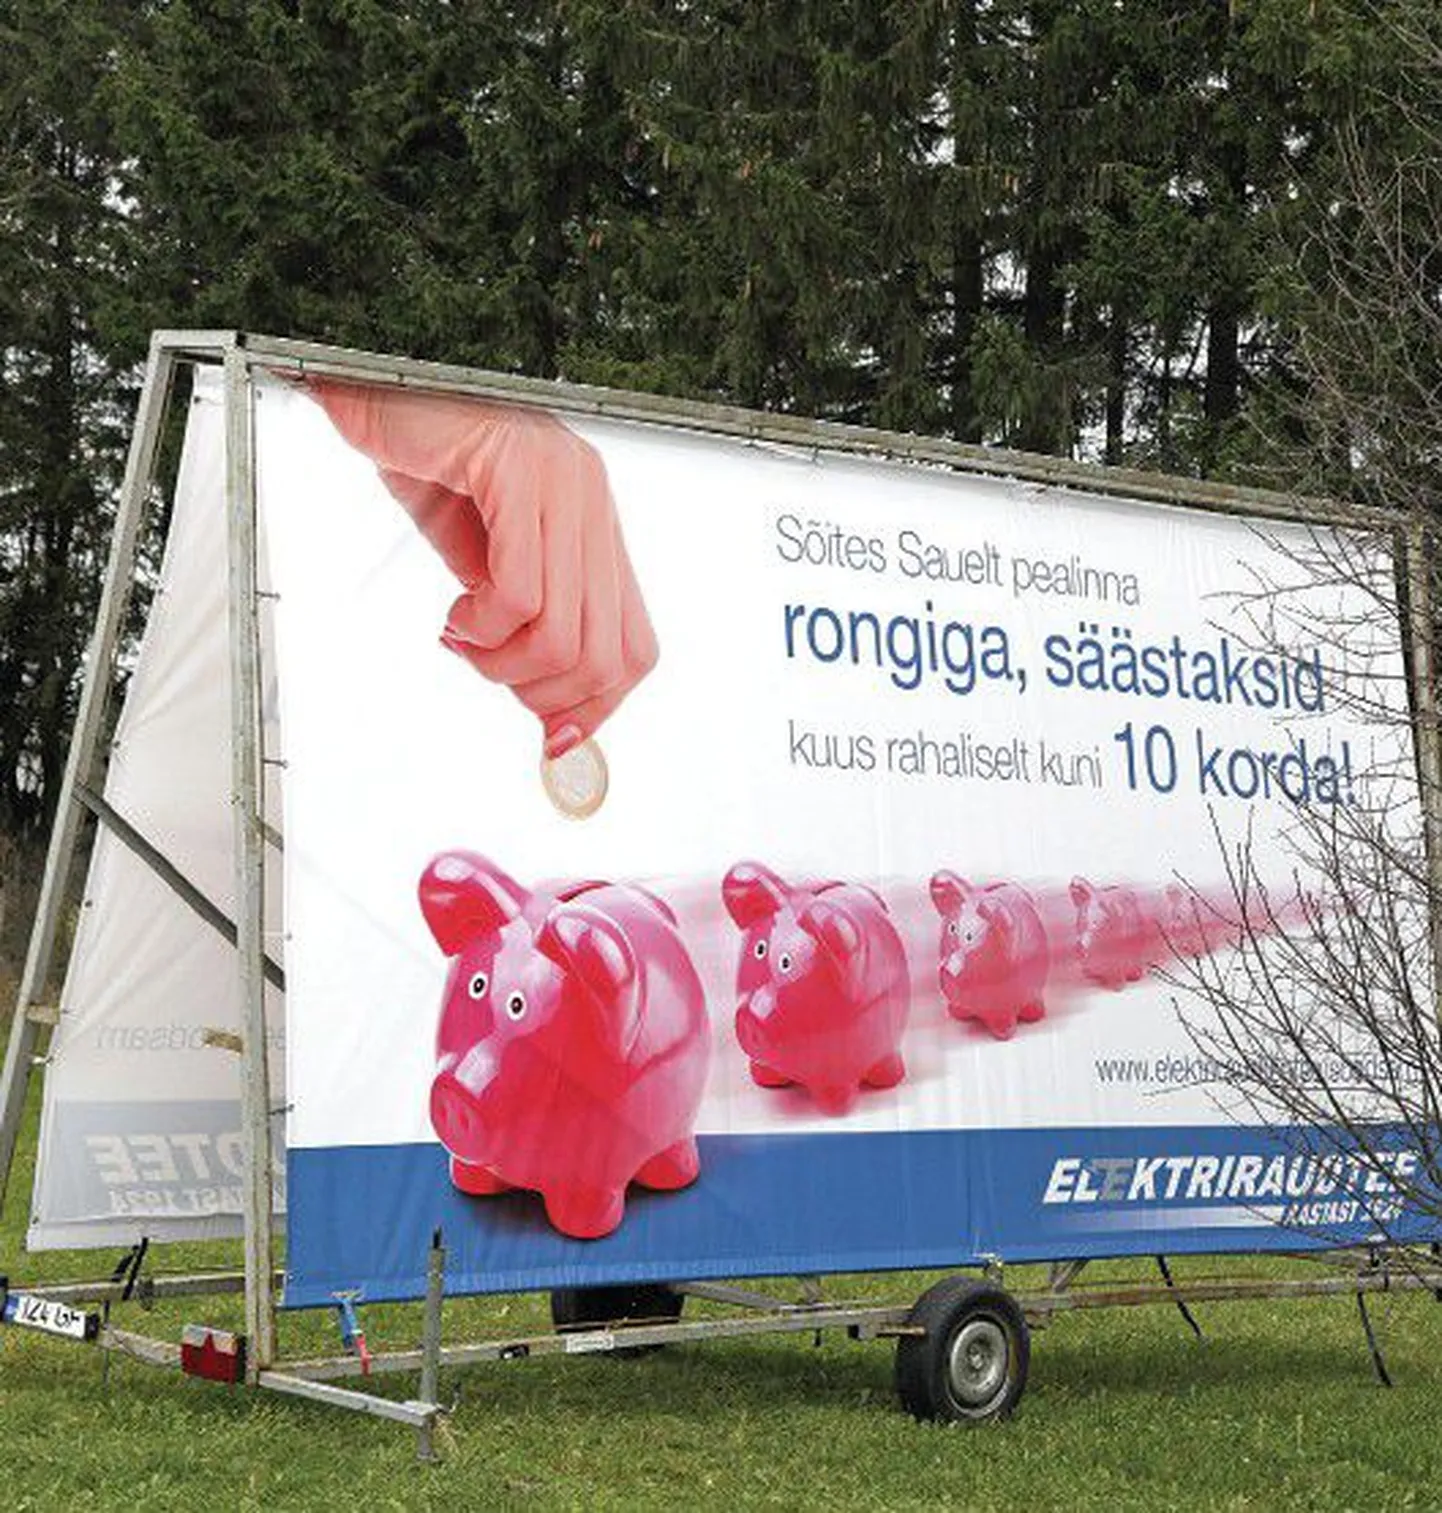 Рекламные плакаты утверждают, что на электричке можно проехать в десять раз дешевле.